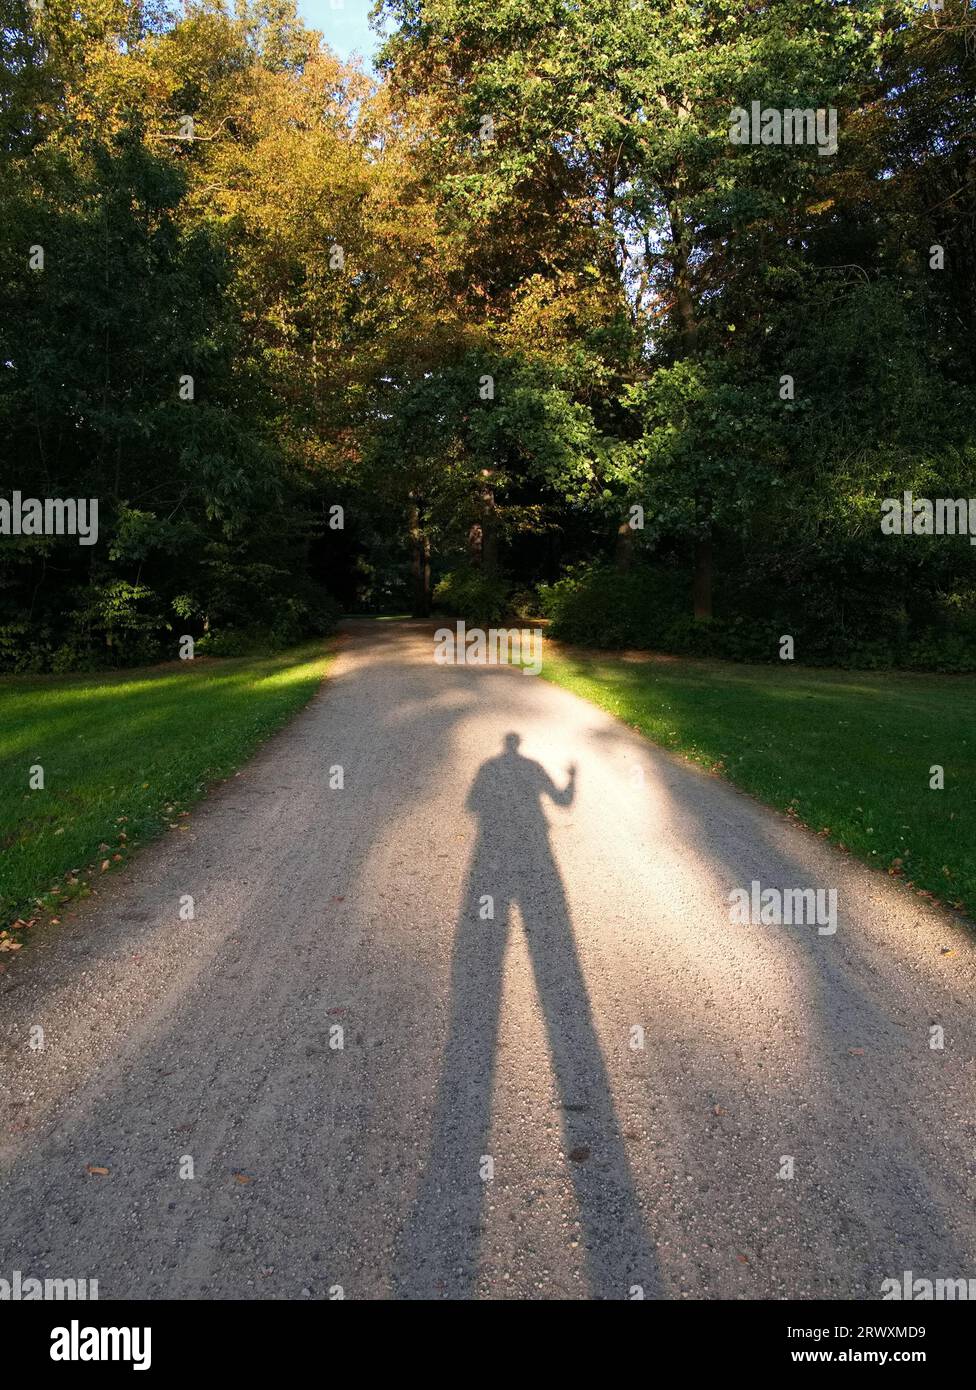 Nel Parco Großer Garten è stato fotografato un sentiero con lunghe ombre causate dal sole sospeso. Il soggetto è un gioco di luci e ombre. Foto Stock